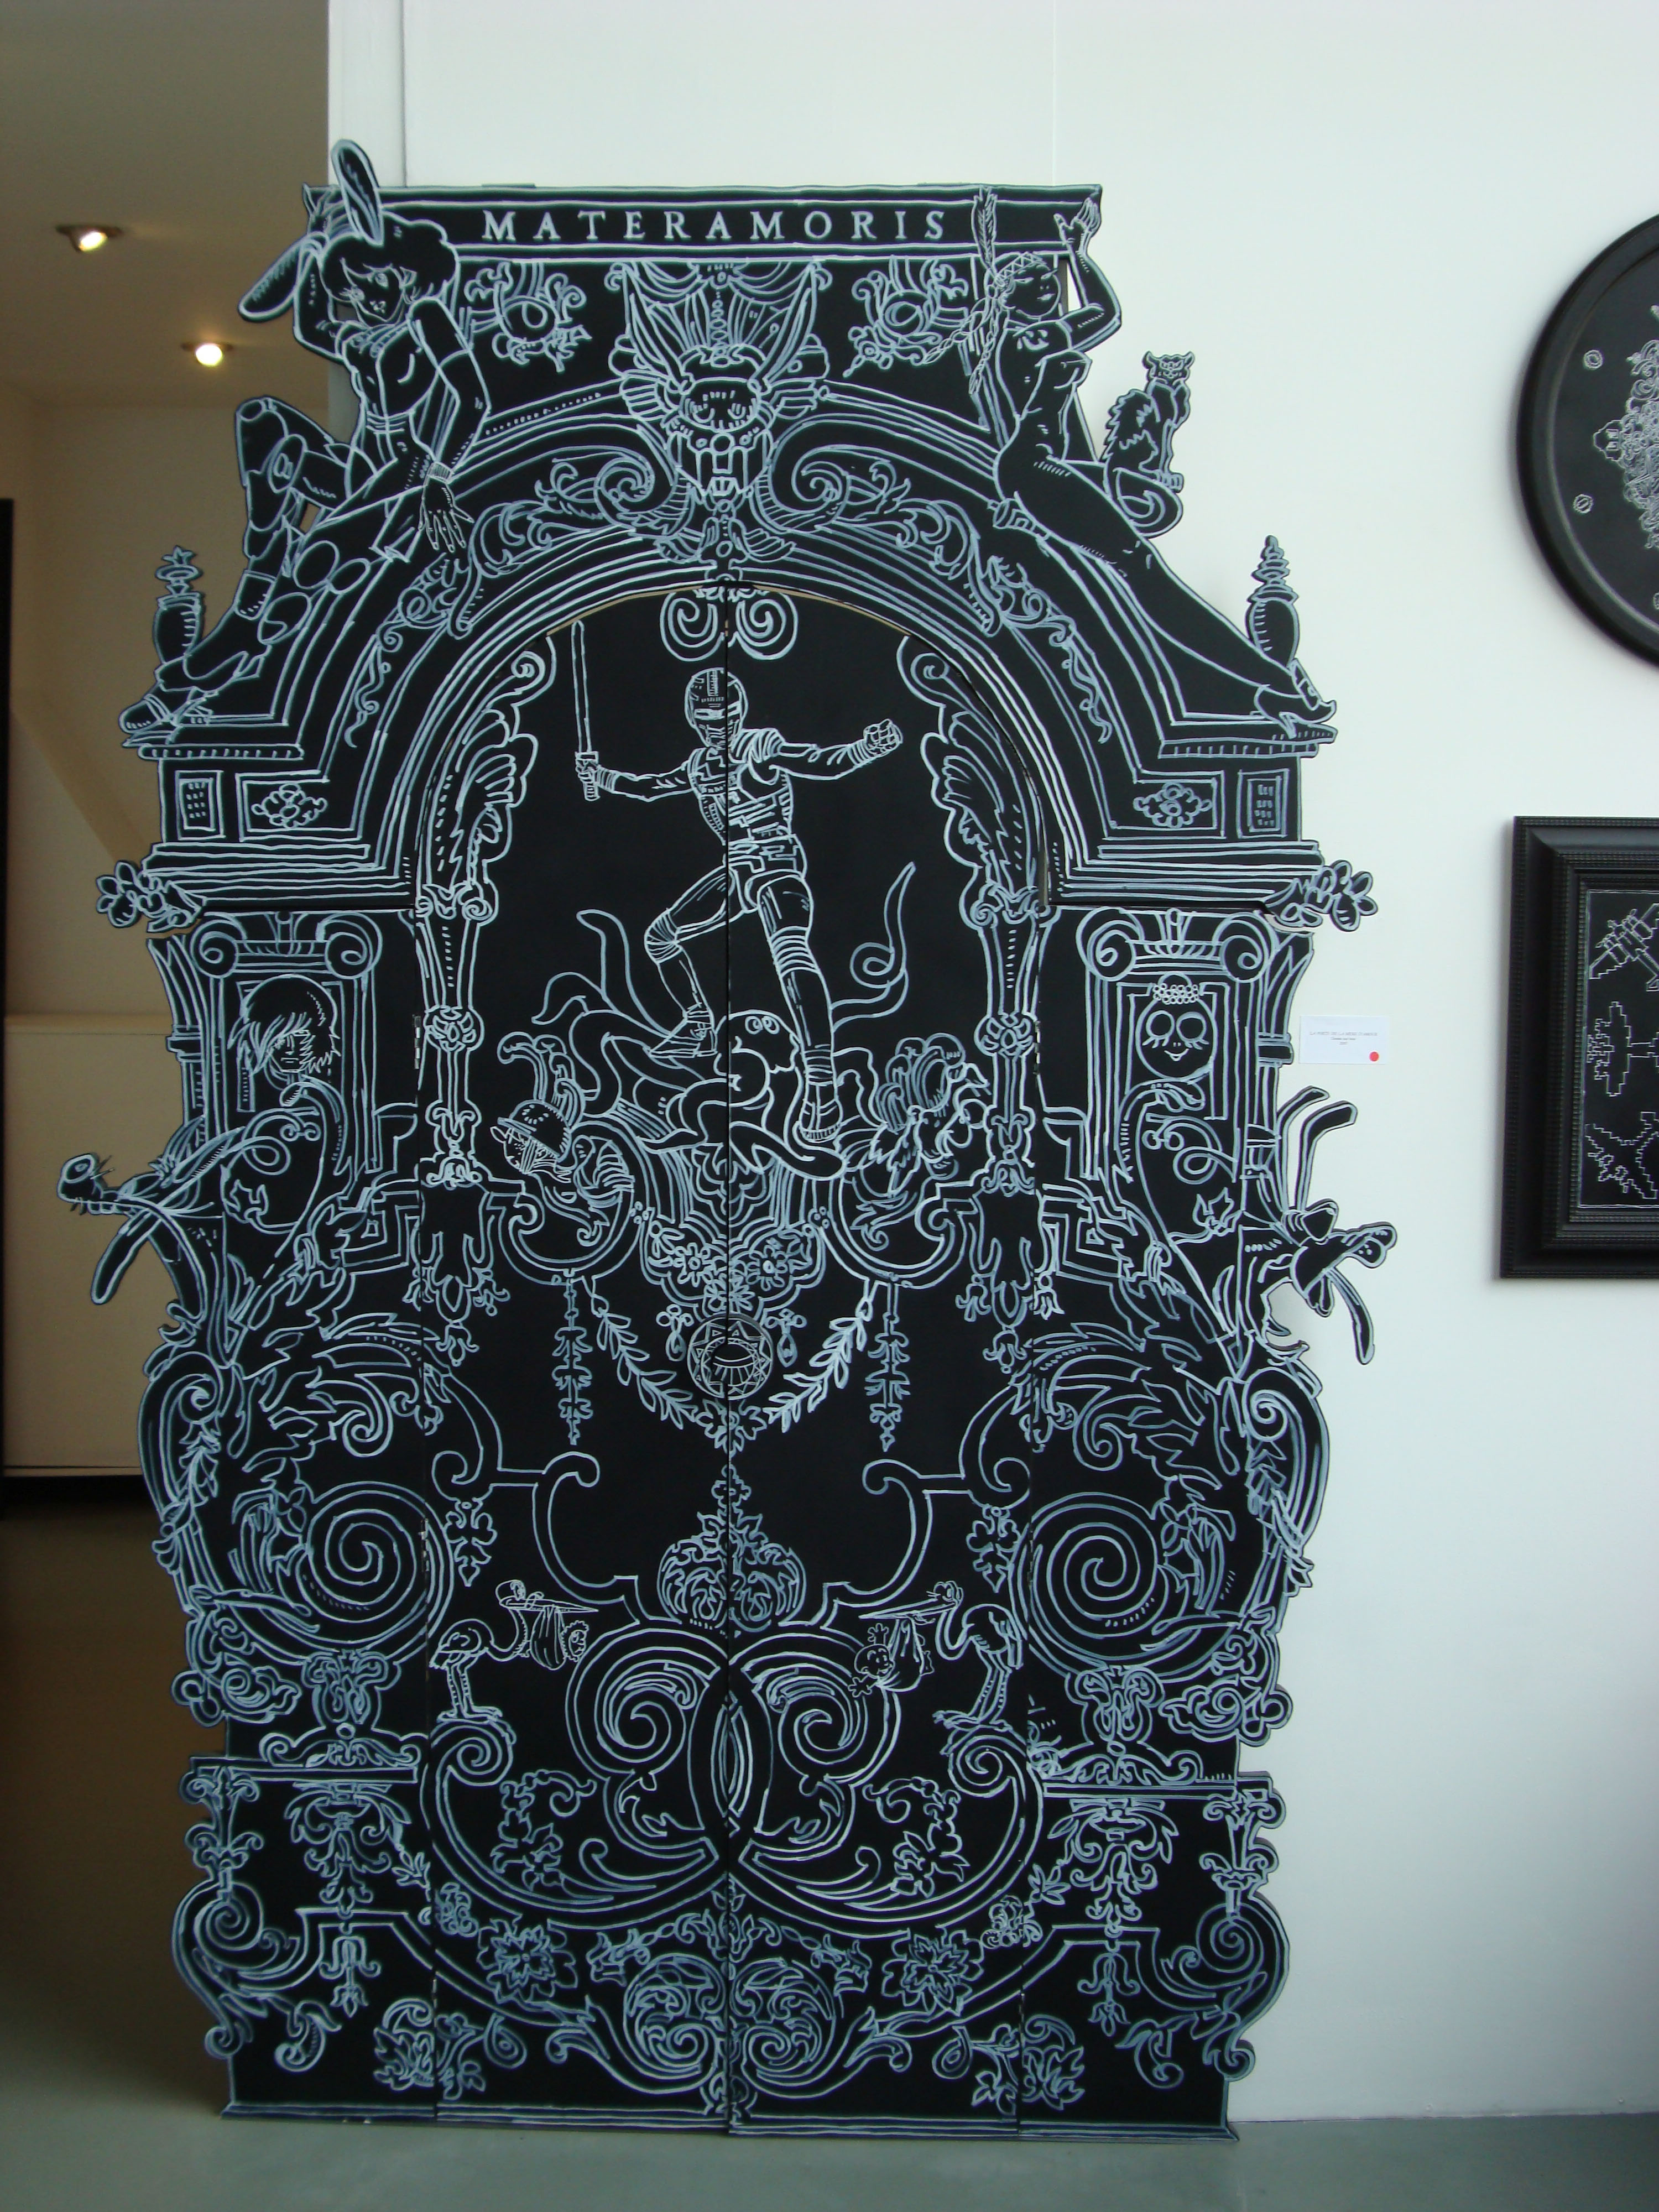 Nicolas Buffe - 2007---09 - Hypnerotomachies - La porte de la Mère d’Amour, (door) ink on panels, 2,7 x 1,6 m (photo 1)